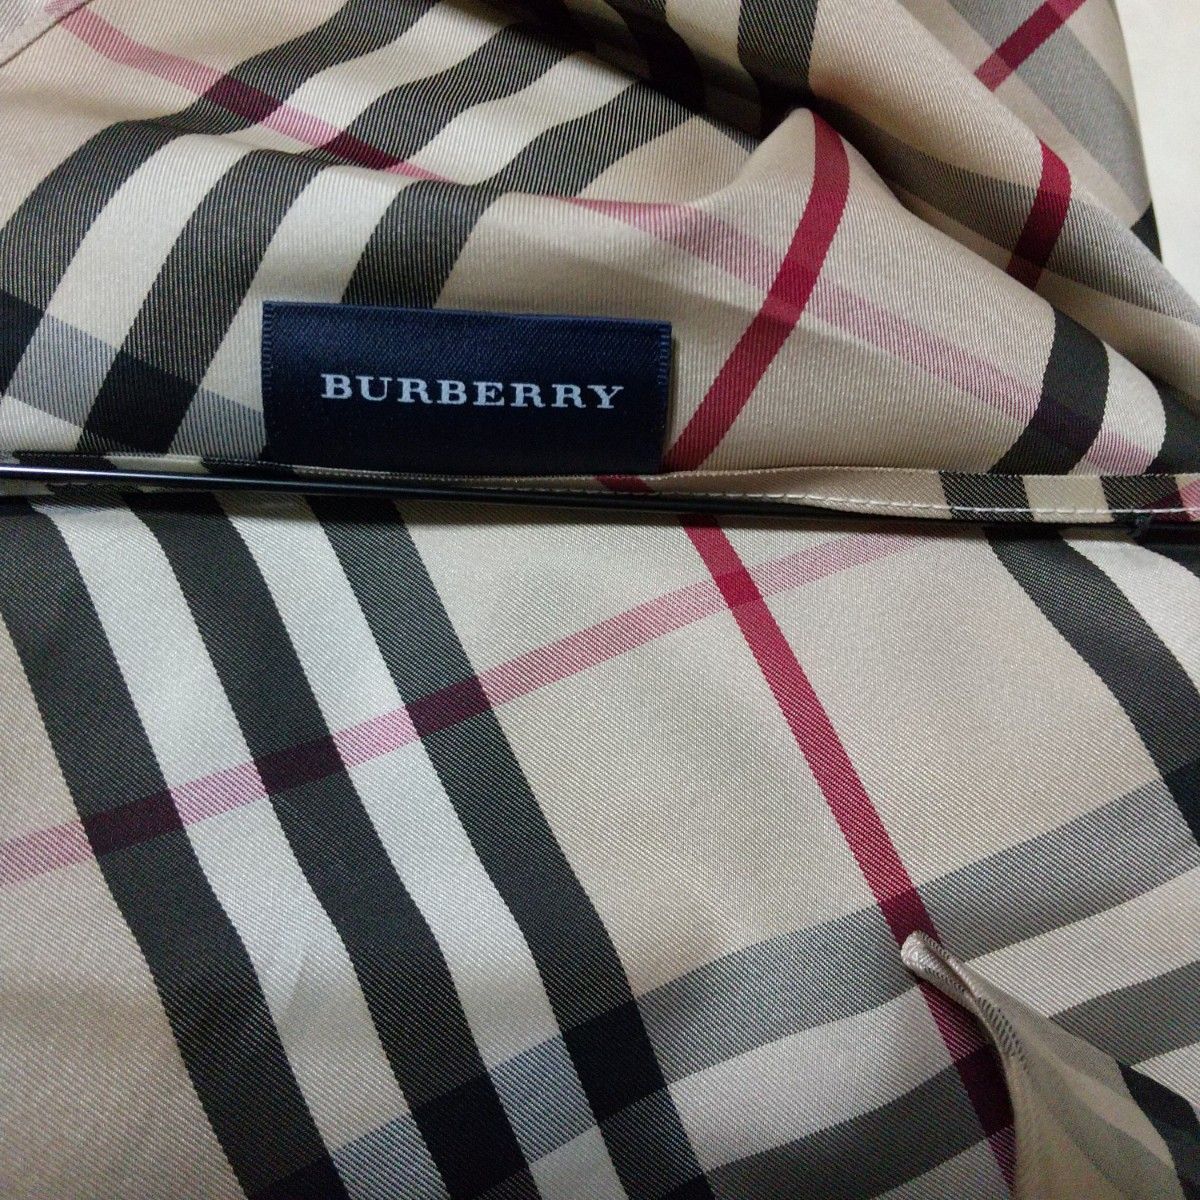 新品同様 BURBERRY バーバリー フルノバチェック 折り畳み傘 雨傘 傘 折りたたみ傘 ノバチェック カバー